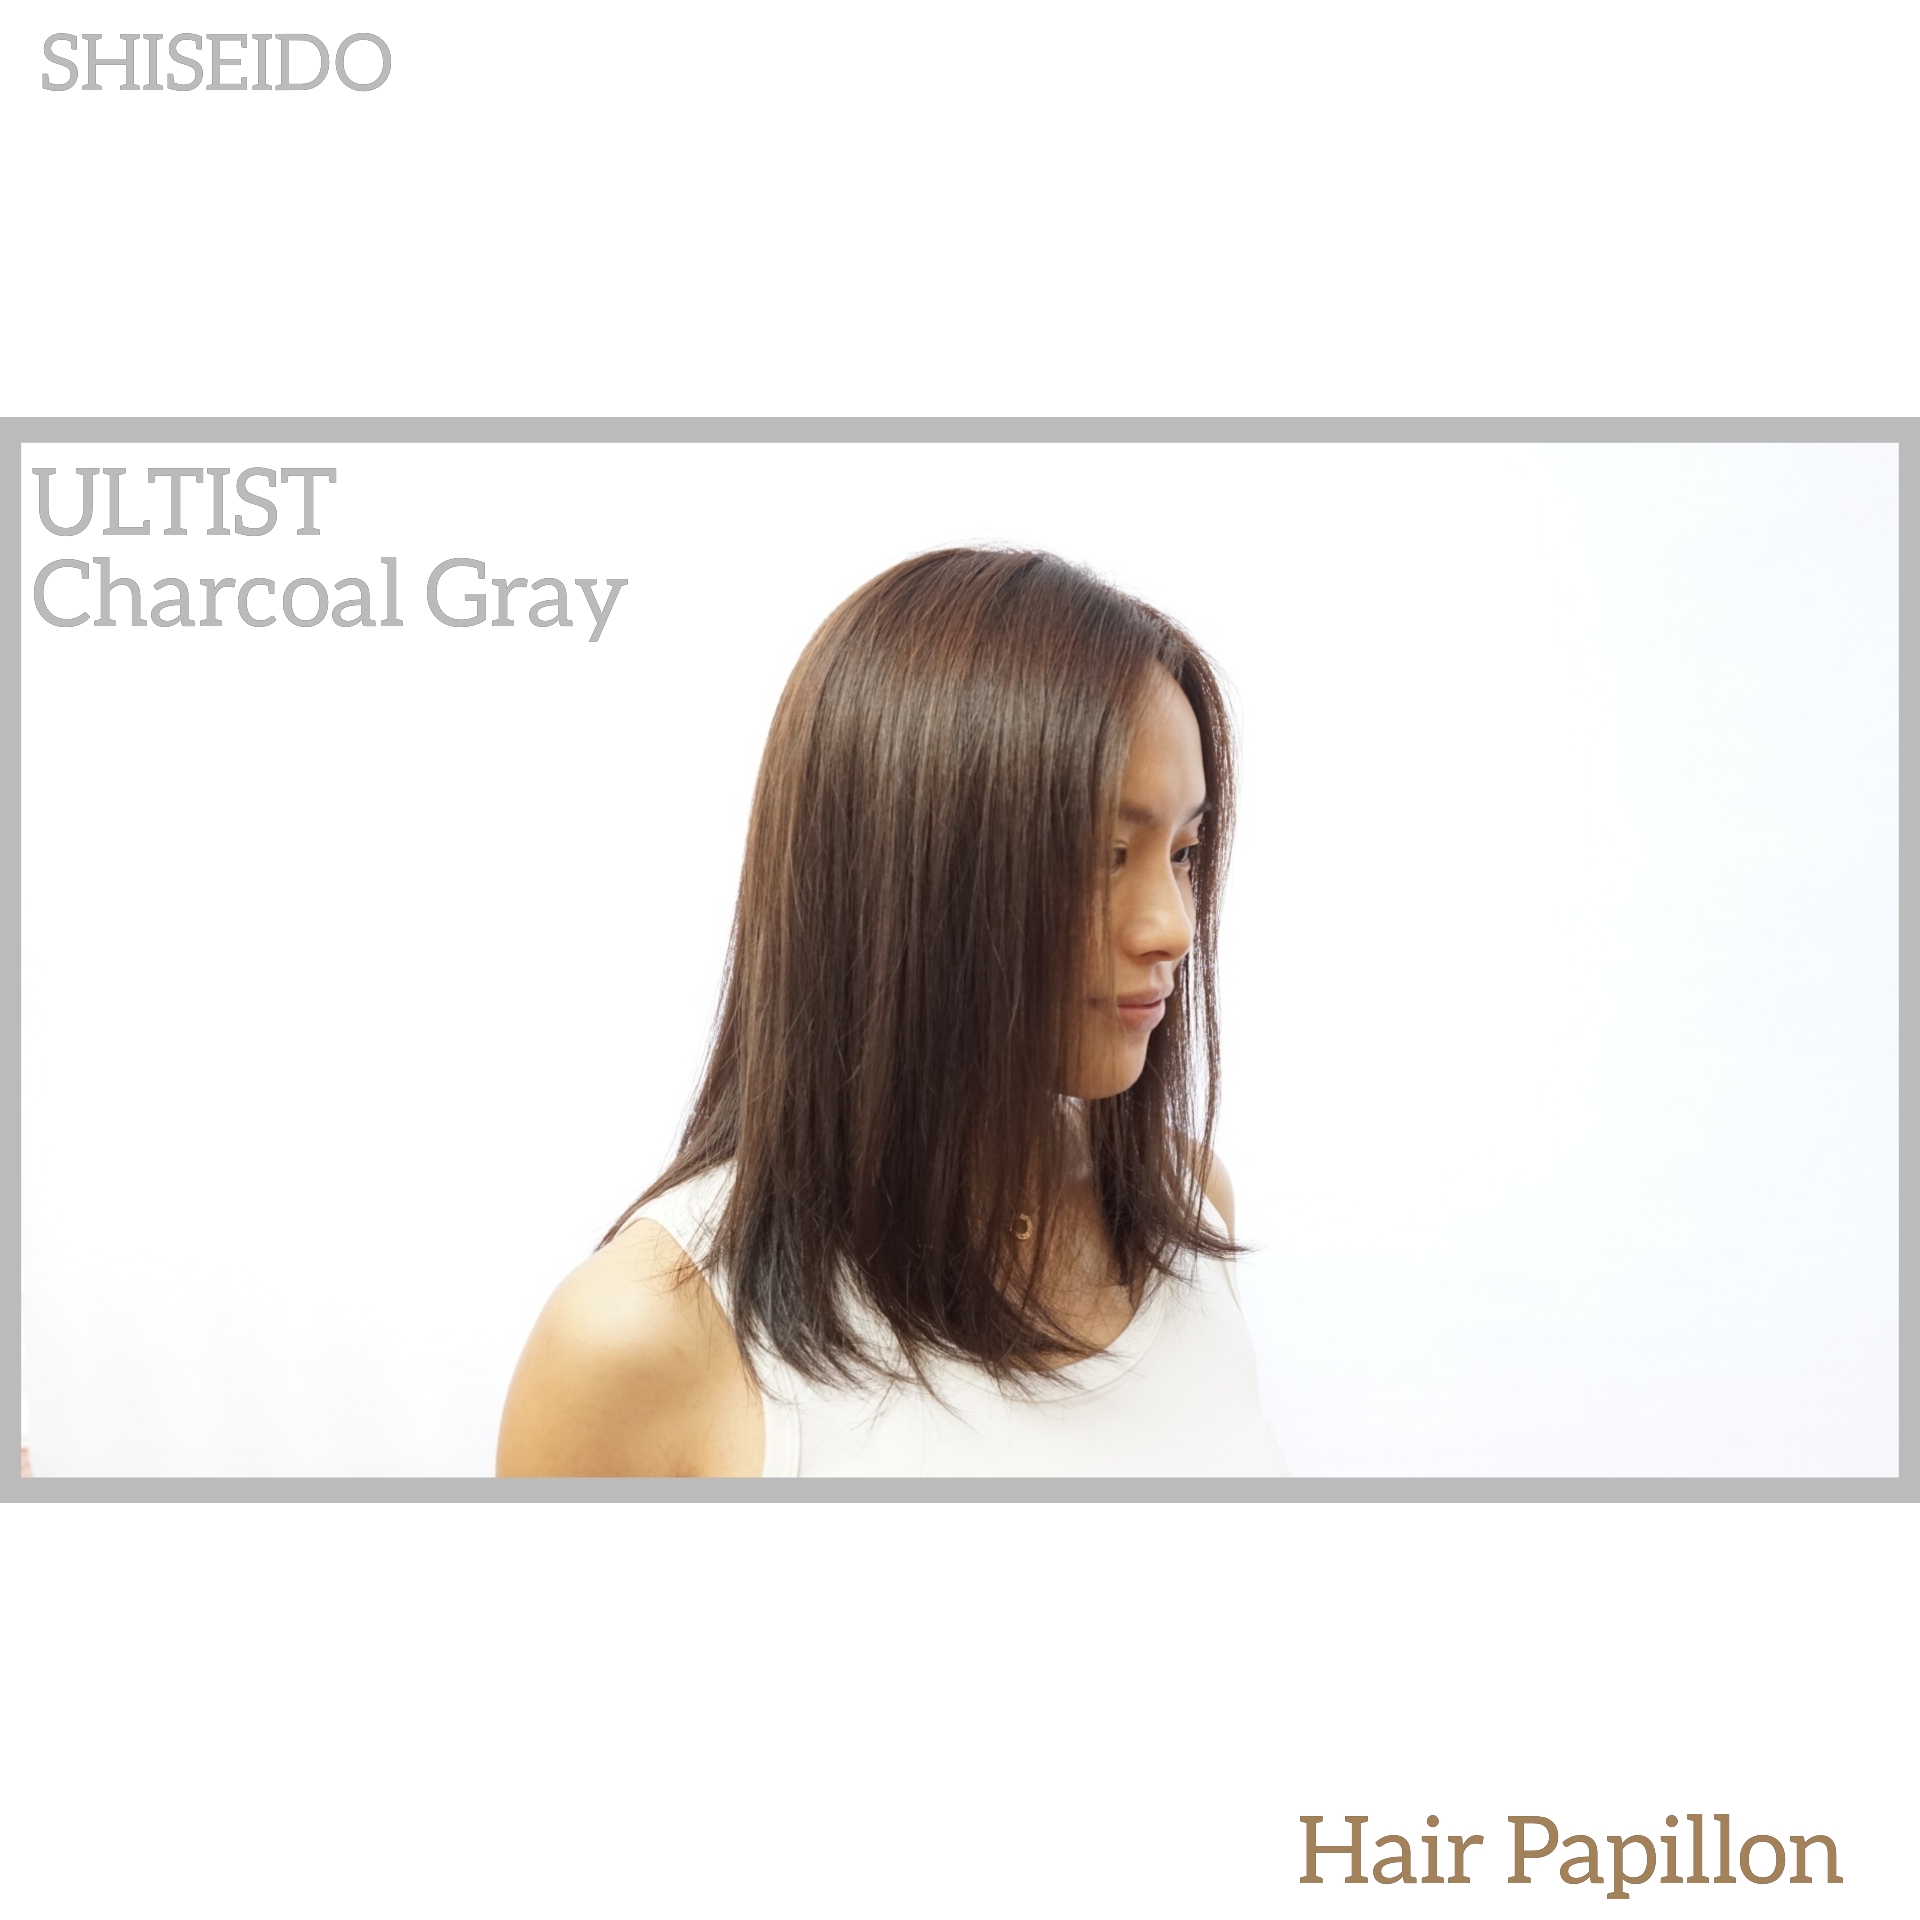 髮型作品參考:shiseido color CG